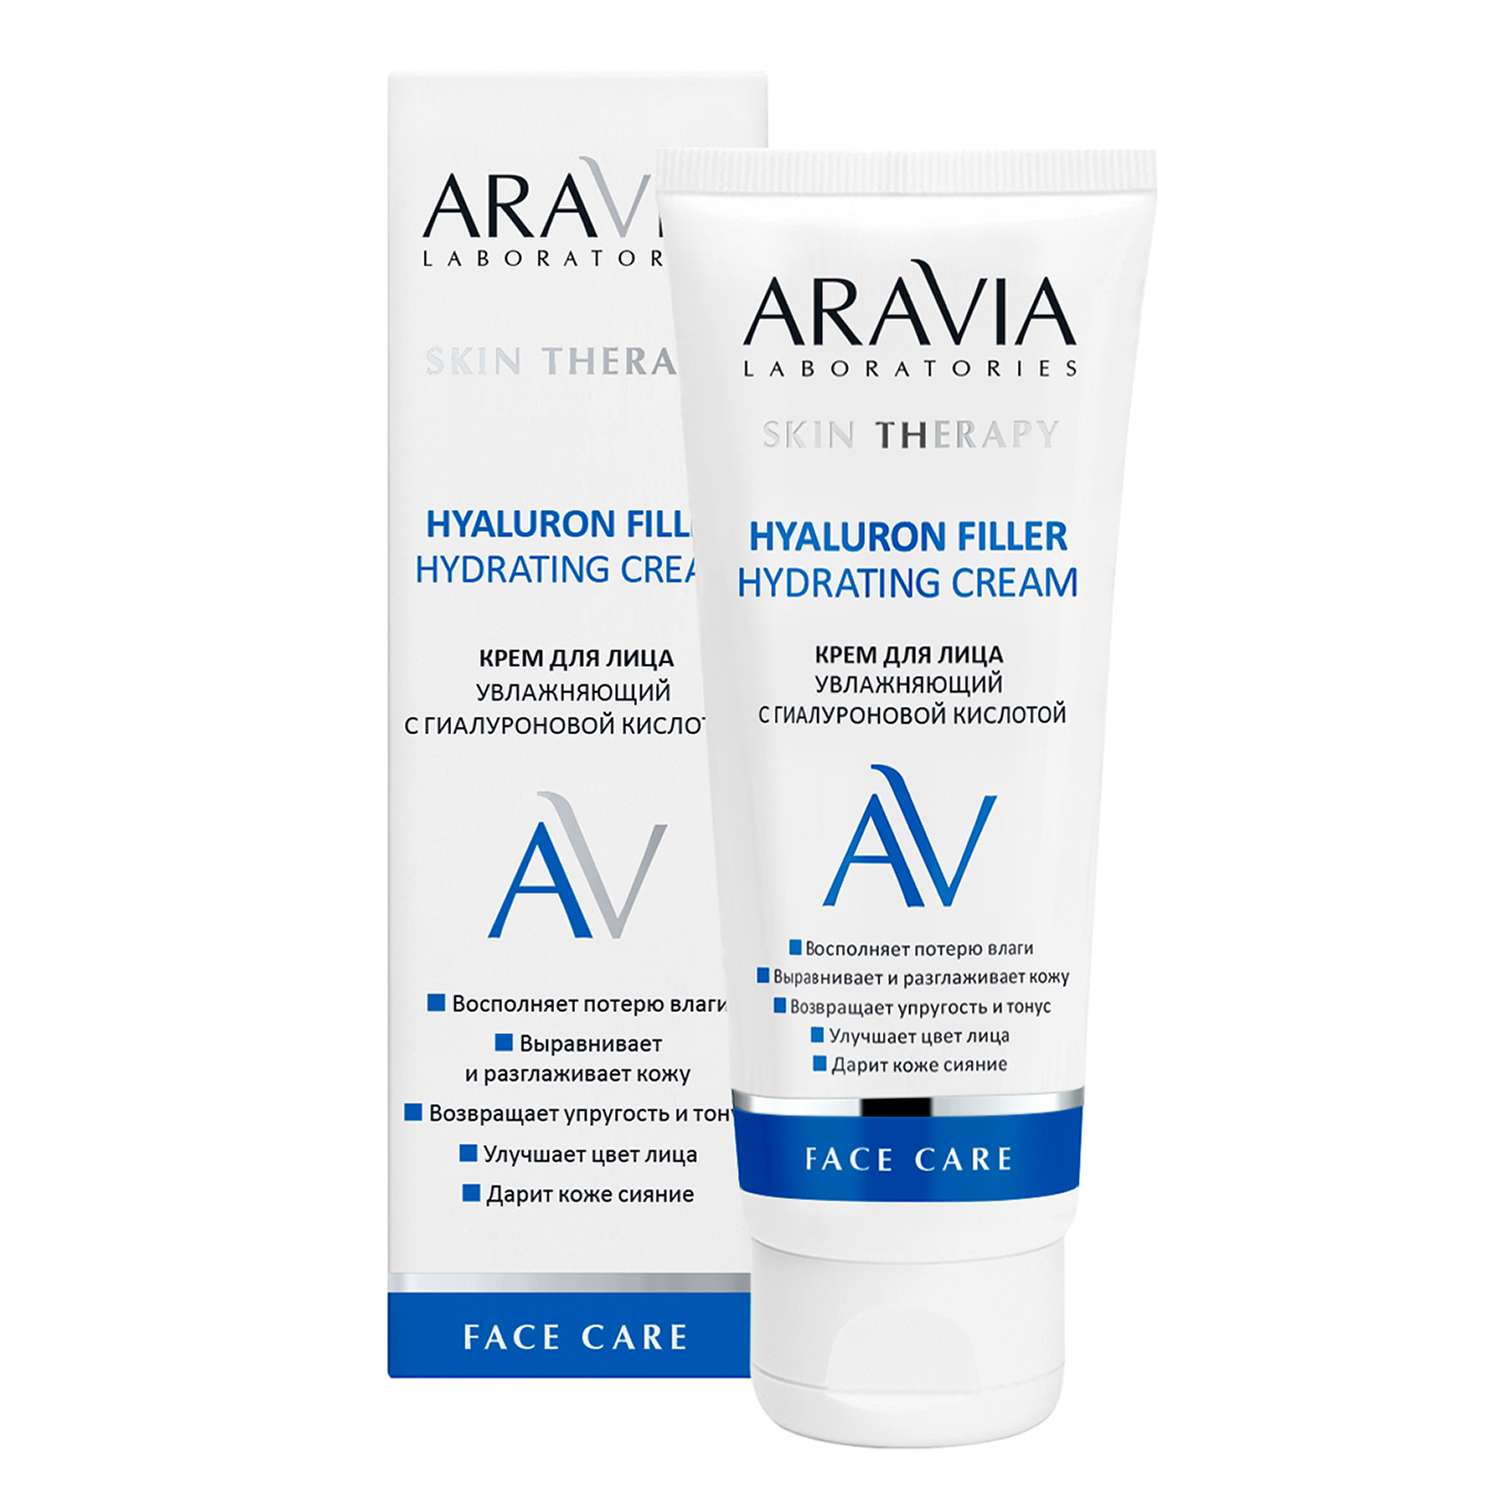 Крем для лица ARAVIA Laboratories увлажняющий с гиалуроновой кислотой Hyaluron Filler Hydrating Cream 50 мл - фото 4